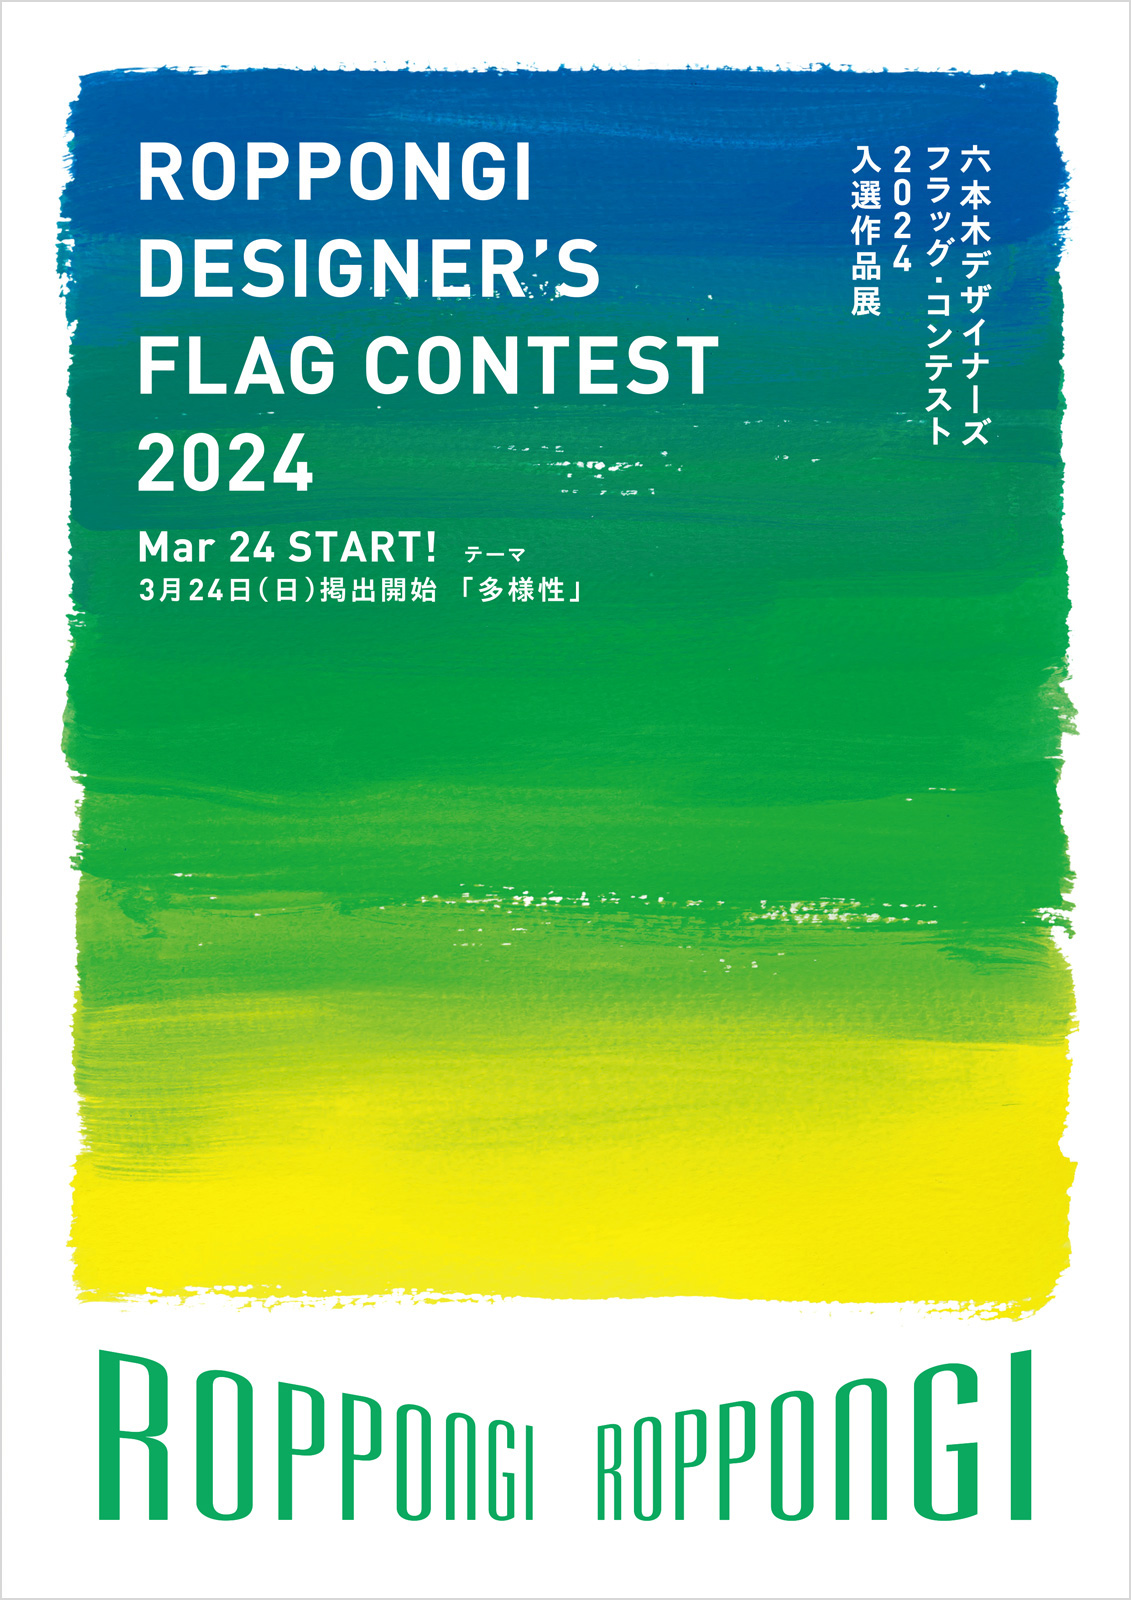 六本木デザイナーズフラッグ・コンテスト2024【JAGDA協力】